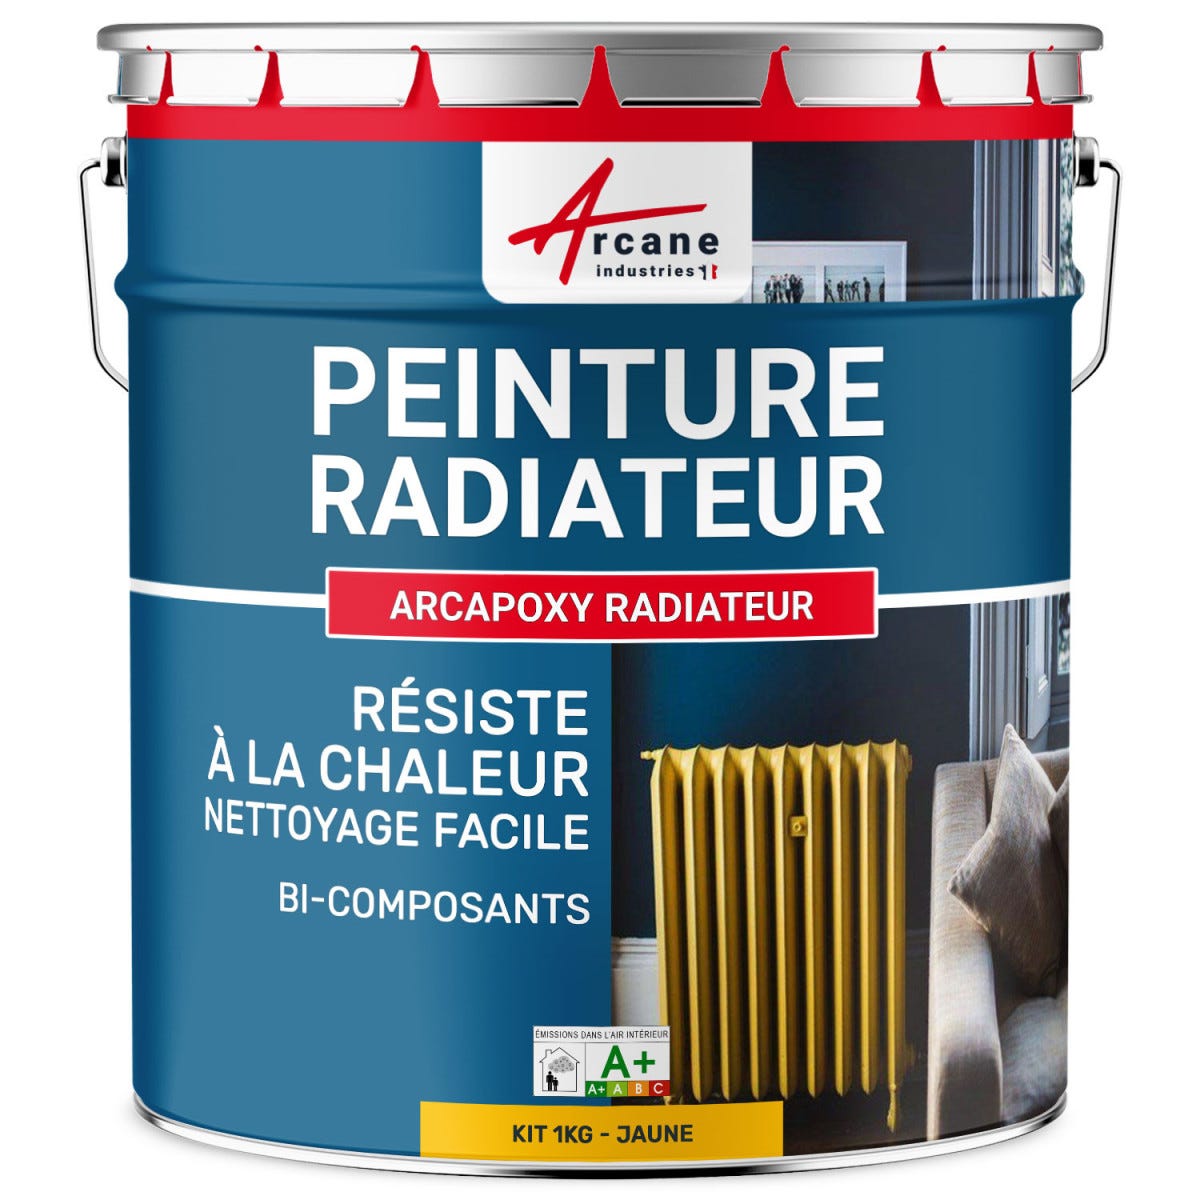 Peinture Radiateur fonte acier alu - PEINTURE RADIATEUR - 1 kg (jusqu'à 5 m² en 2 couches) - Jaune - RAL 1023 - ARCANE INDUSTRIES 5